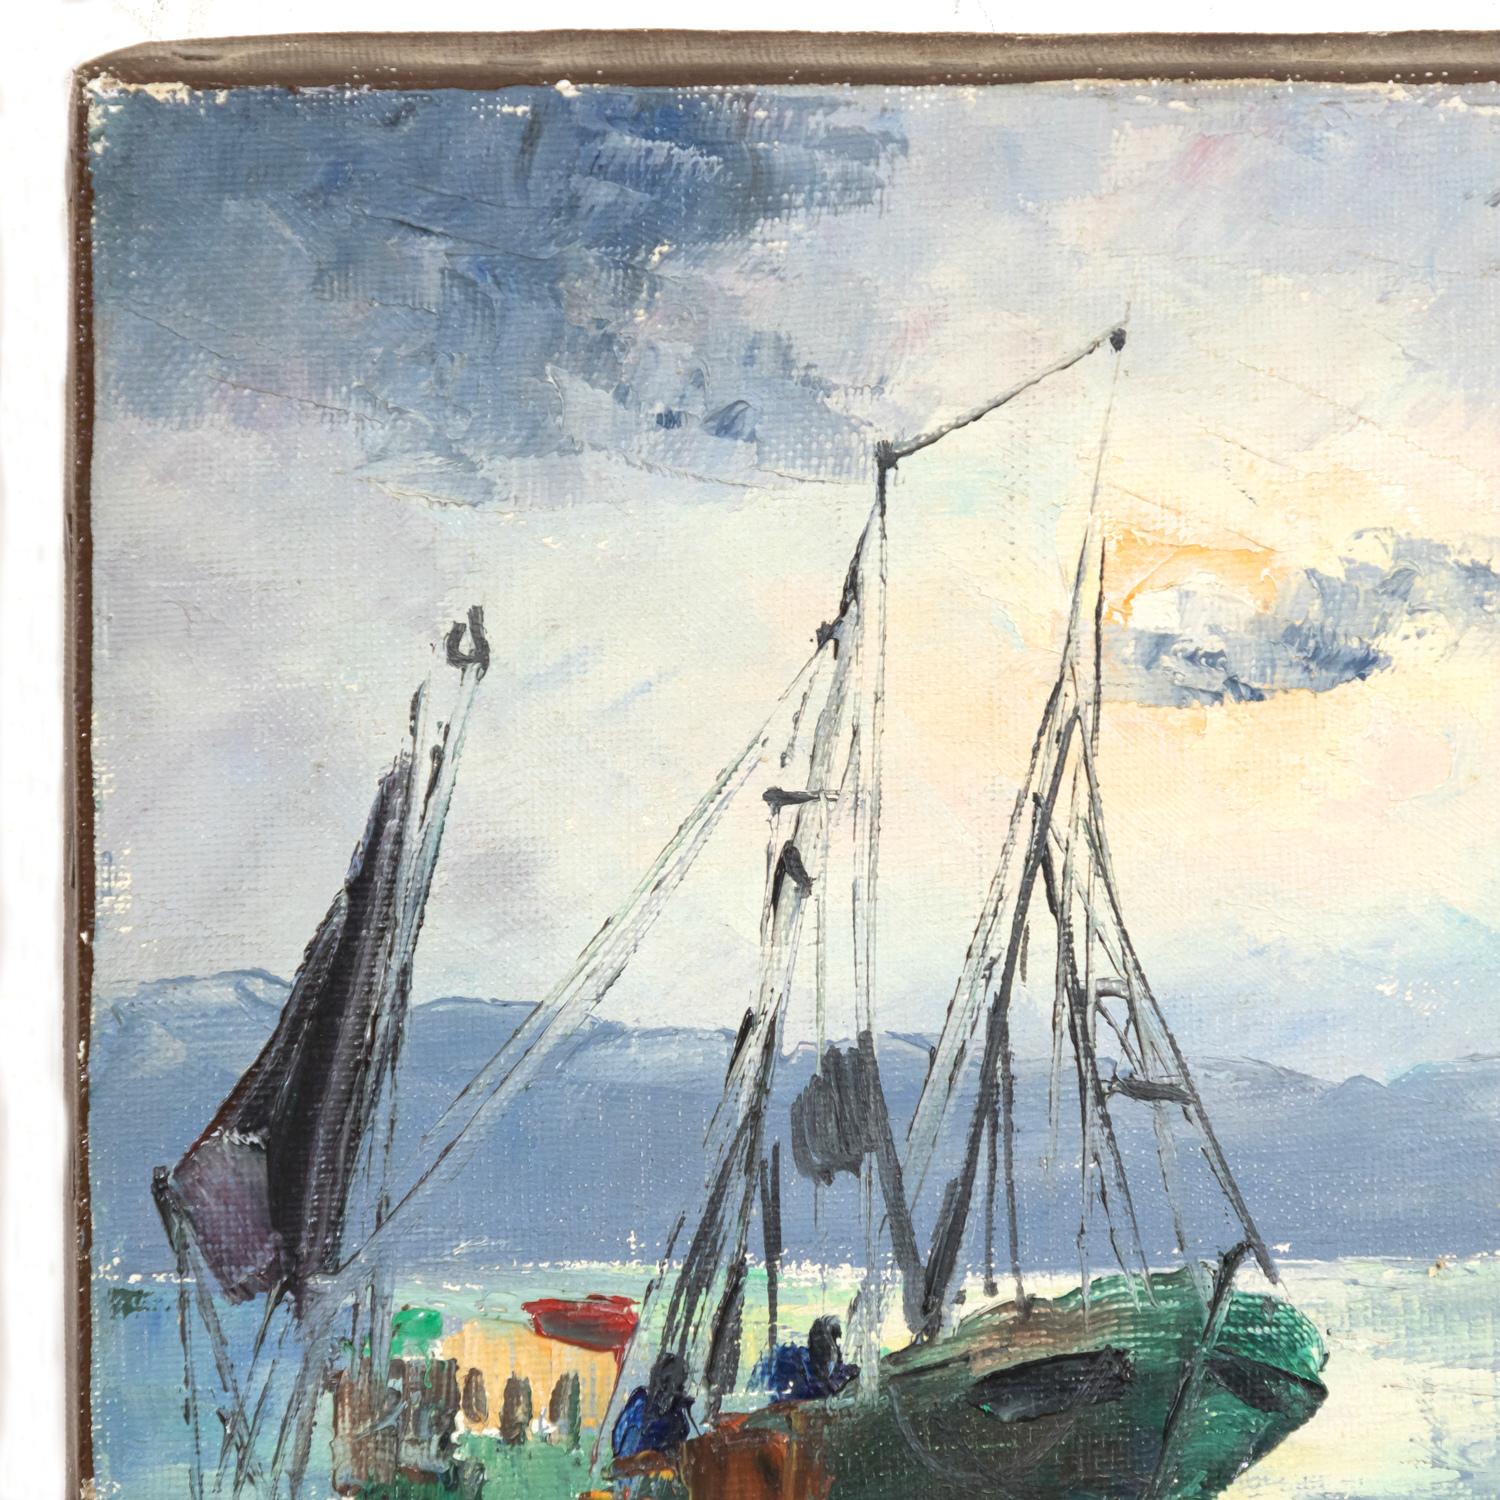 Français Petite peinture à l'huile sur toile - Paysage marin français - Bateaux de pêche et canoë en vente